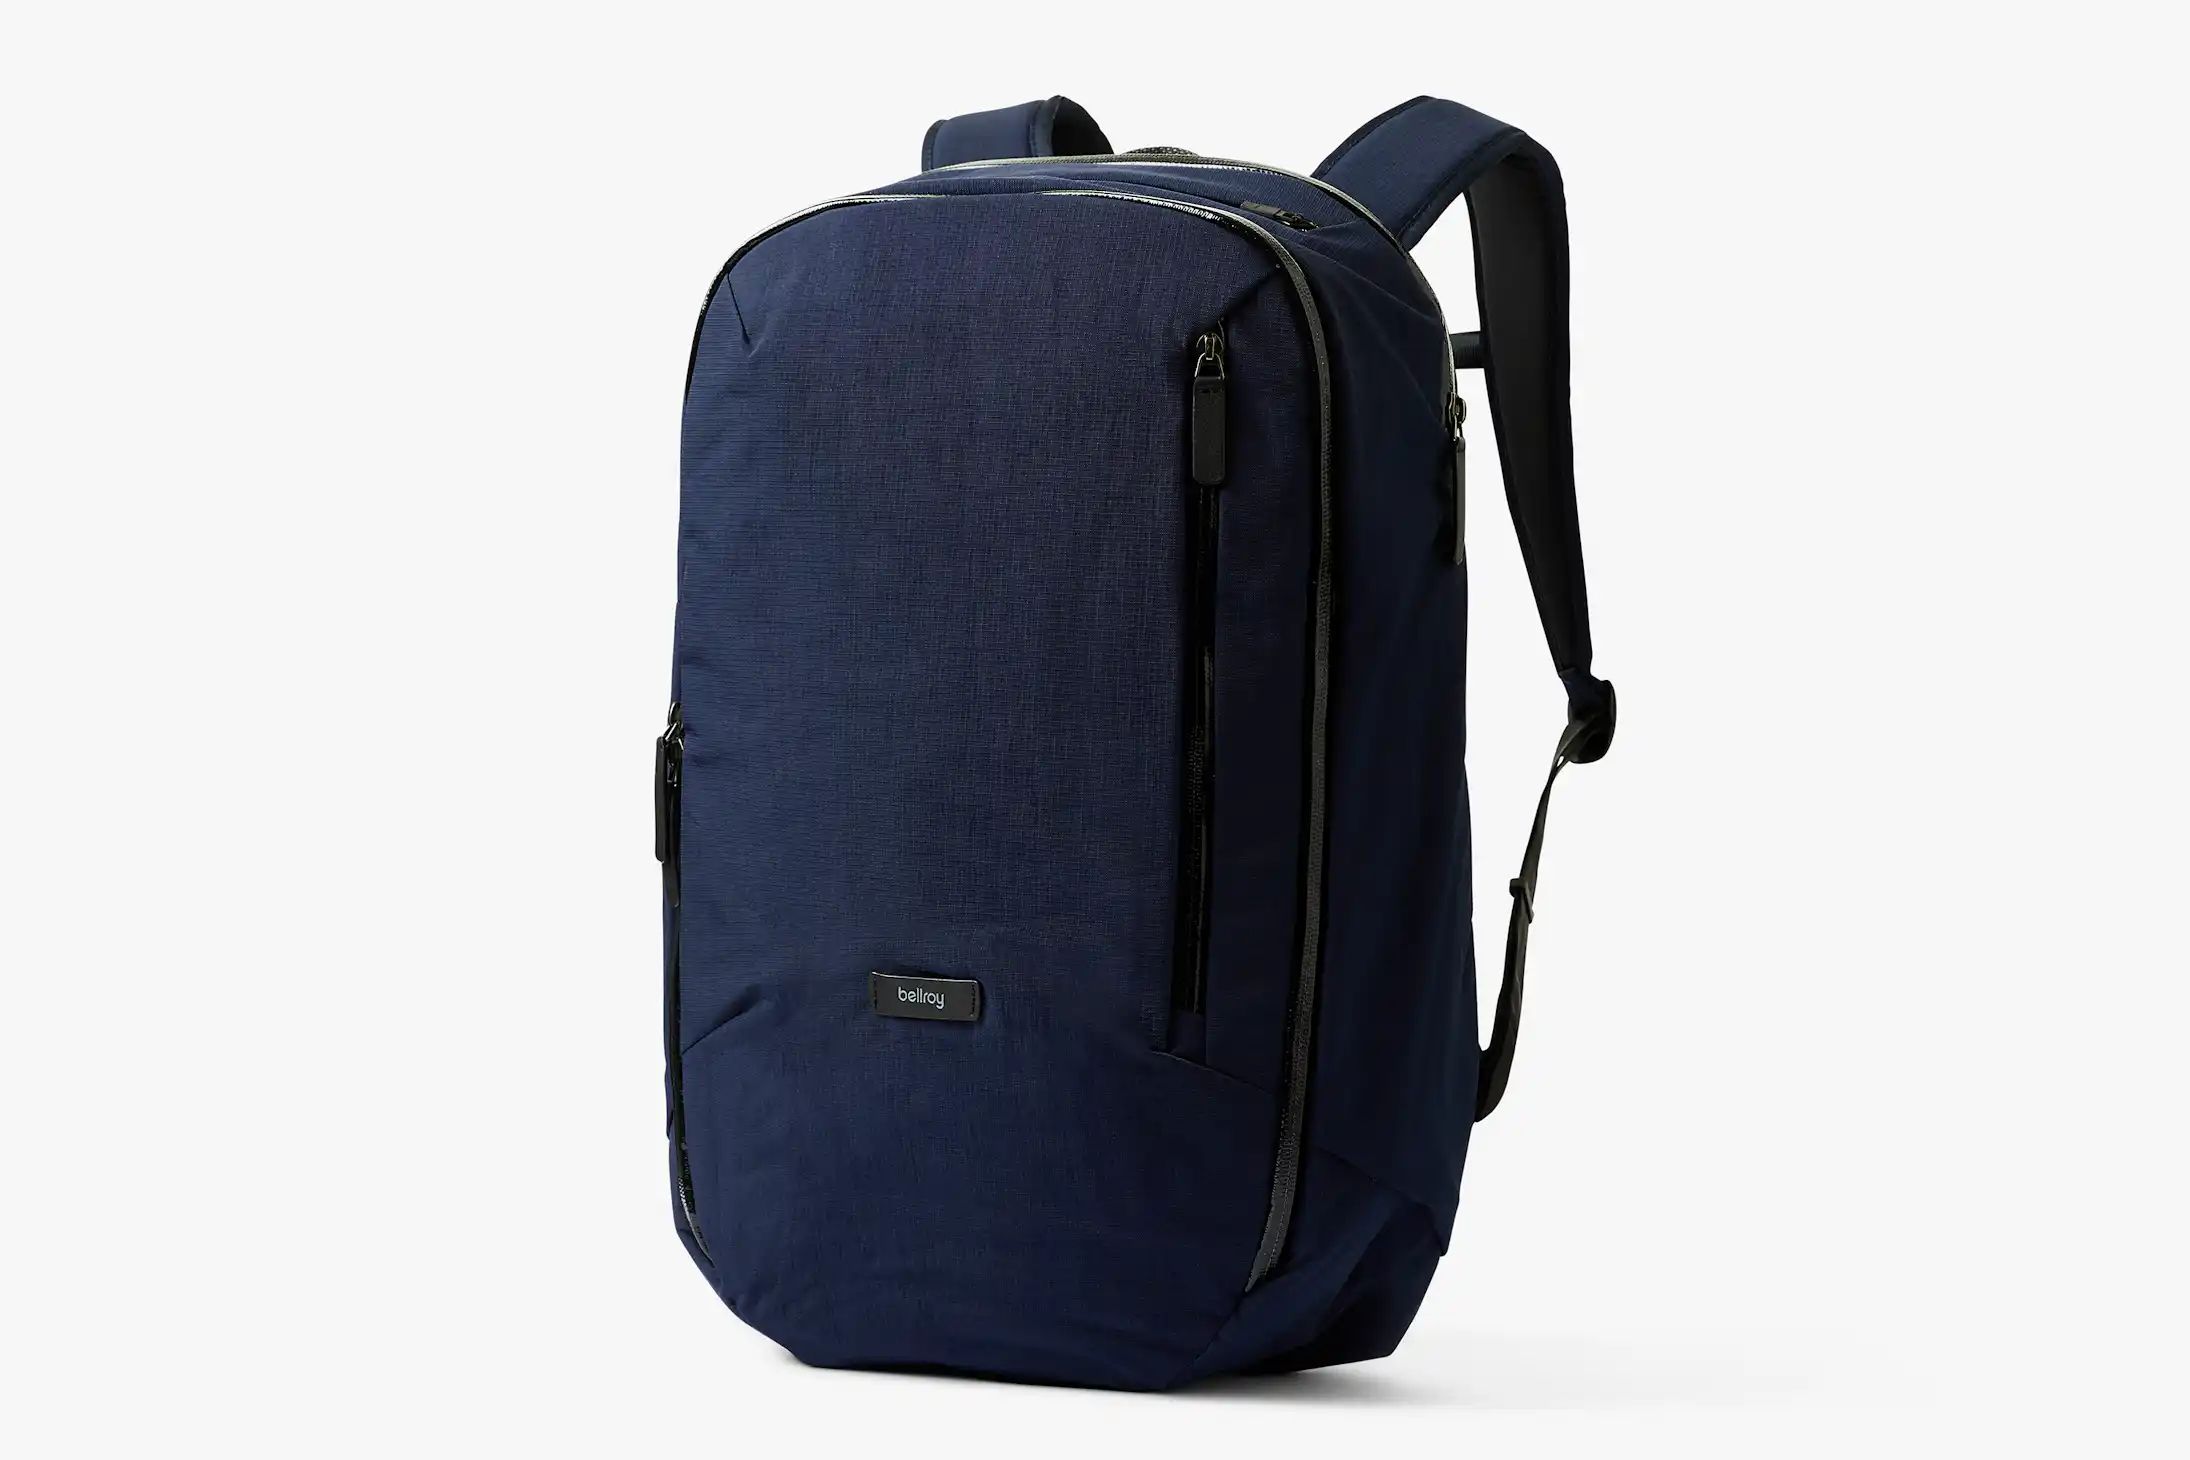 Transit Backpack | Large laptop travel backpack | Bellroy | Bellroy